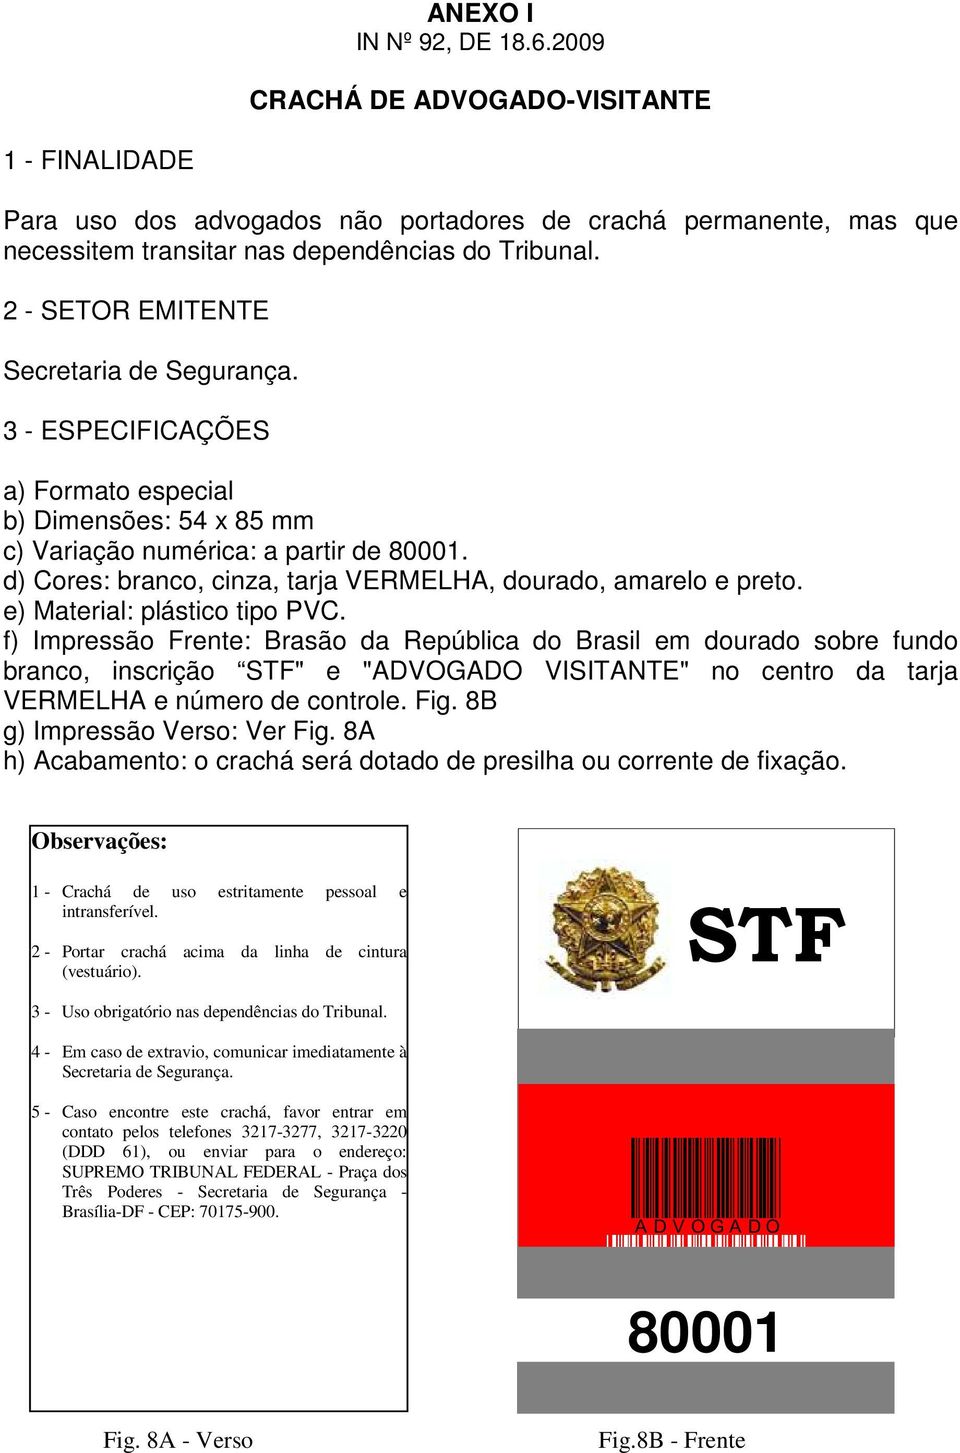 f) Impressão Frente: Brasão da República do Brasil em dourado sobre fundo branco, inscrição STF" e "ADVOGADO VISITANTE" no centro da tarja VERMELHA e número de controle.